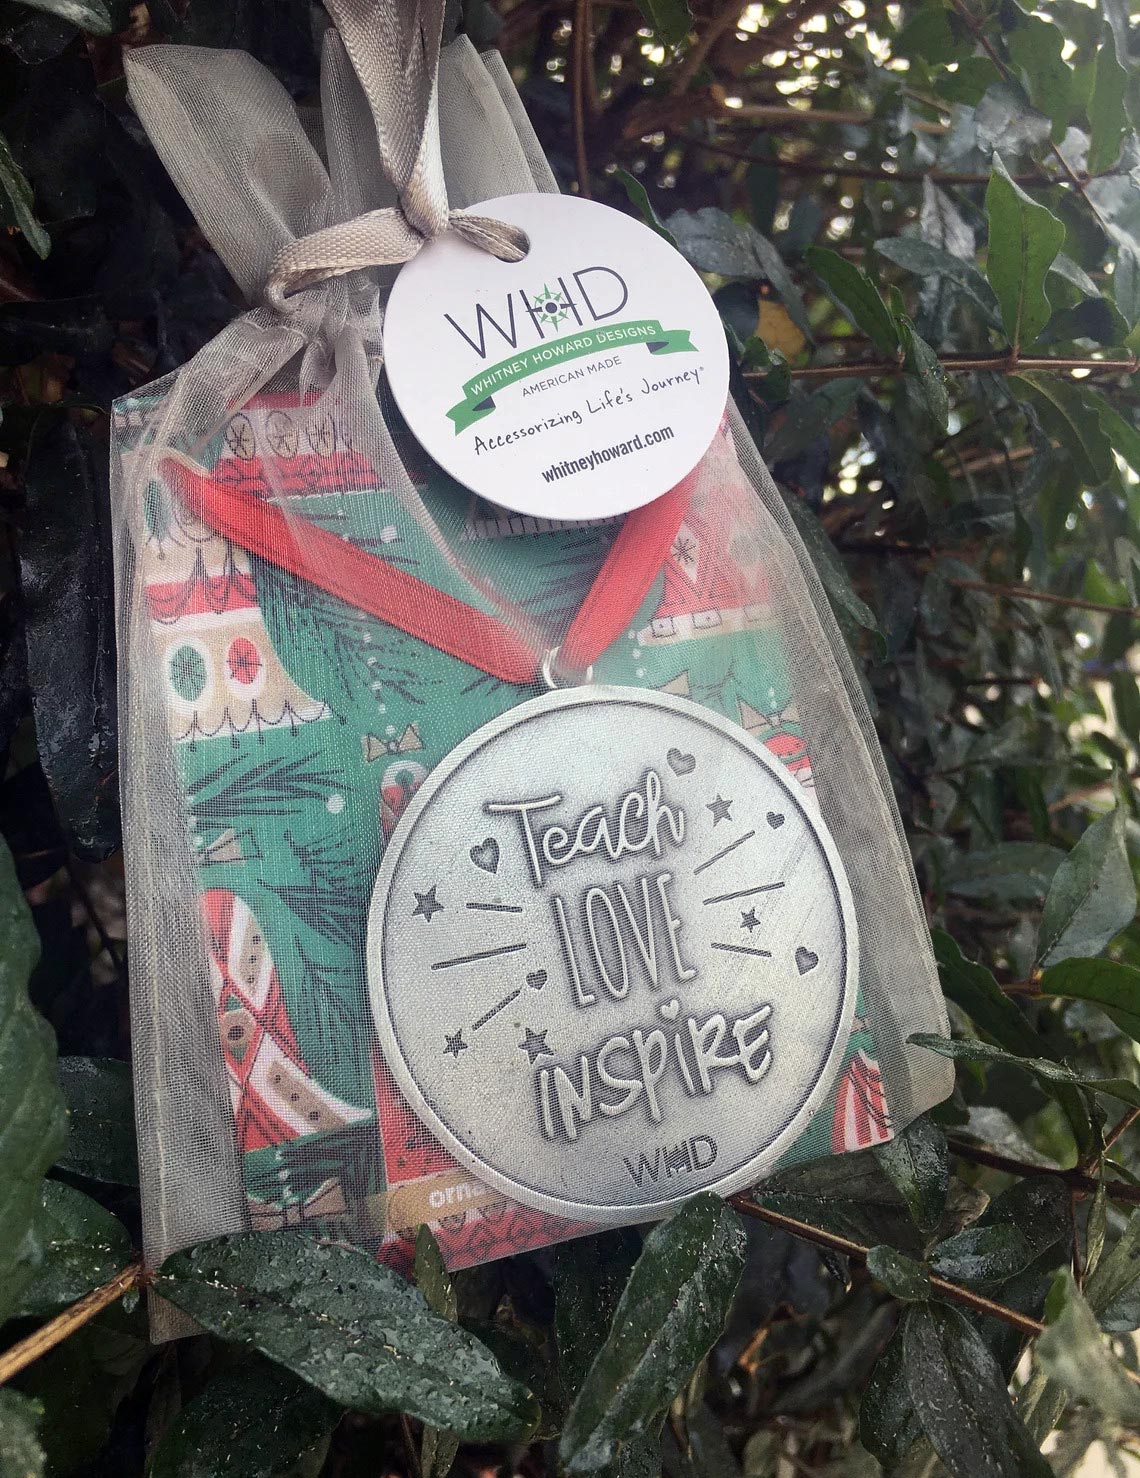 Teacher Love Inspire - Teacher Ornament in bag on tree